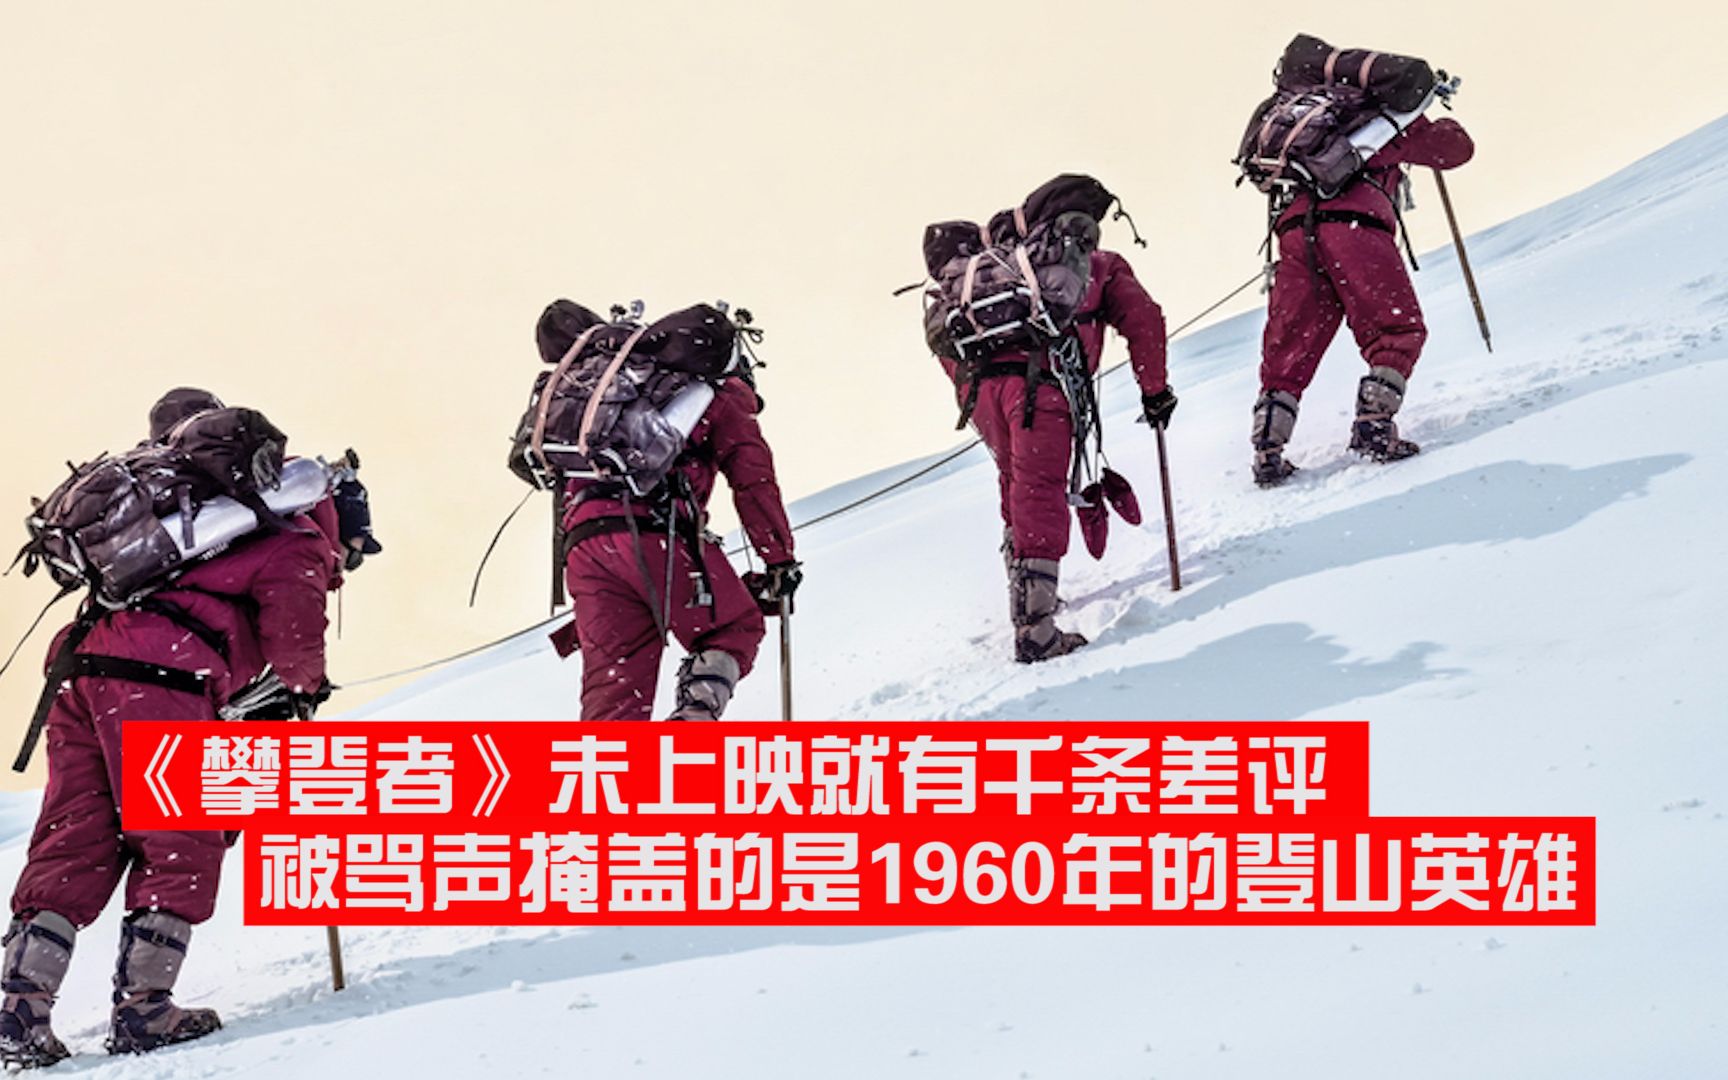 吴京攀登者未上映豆瓣千条差评被骂声掩盖的是1960年的登山英雄